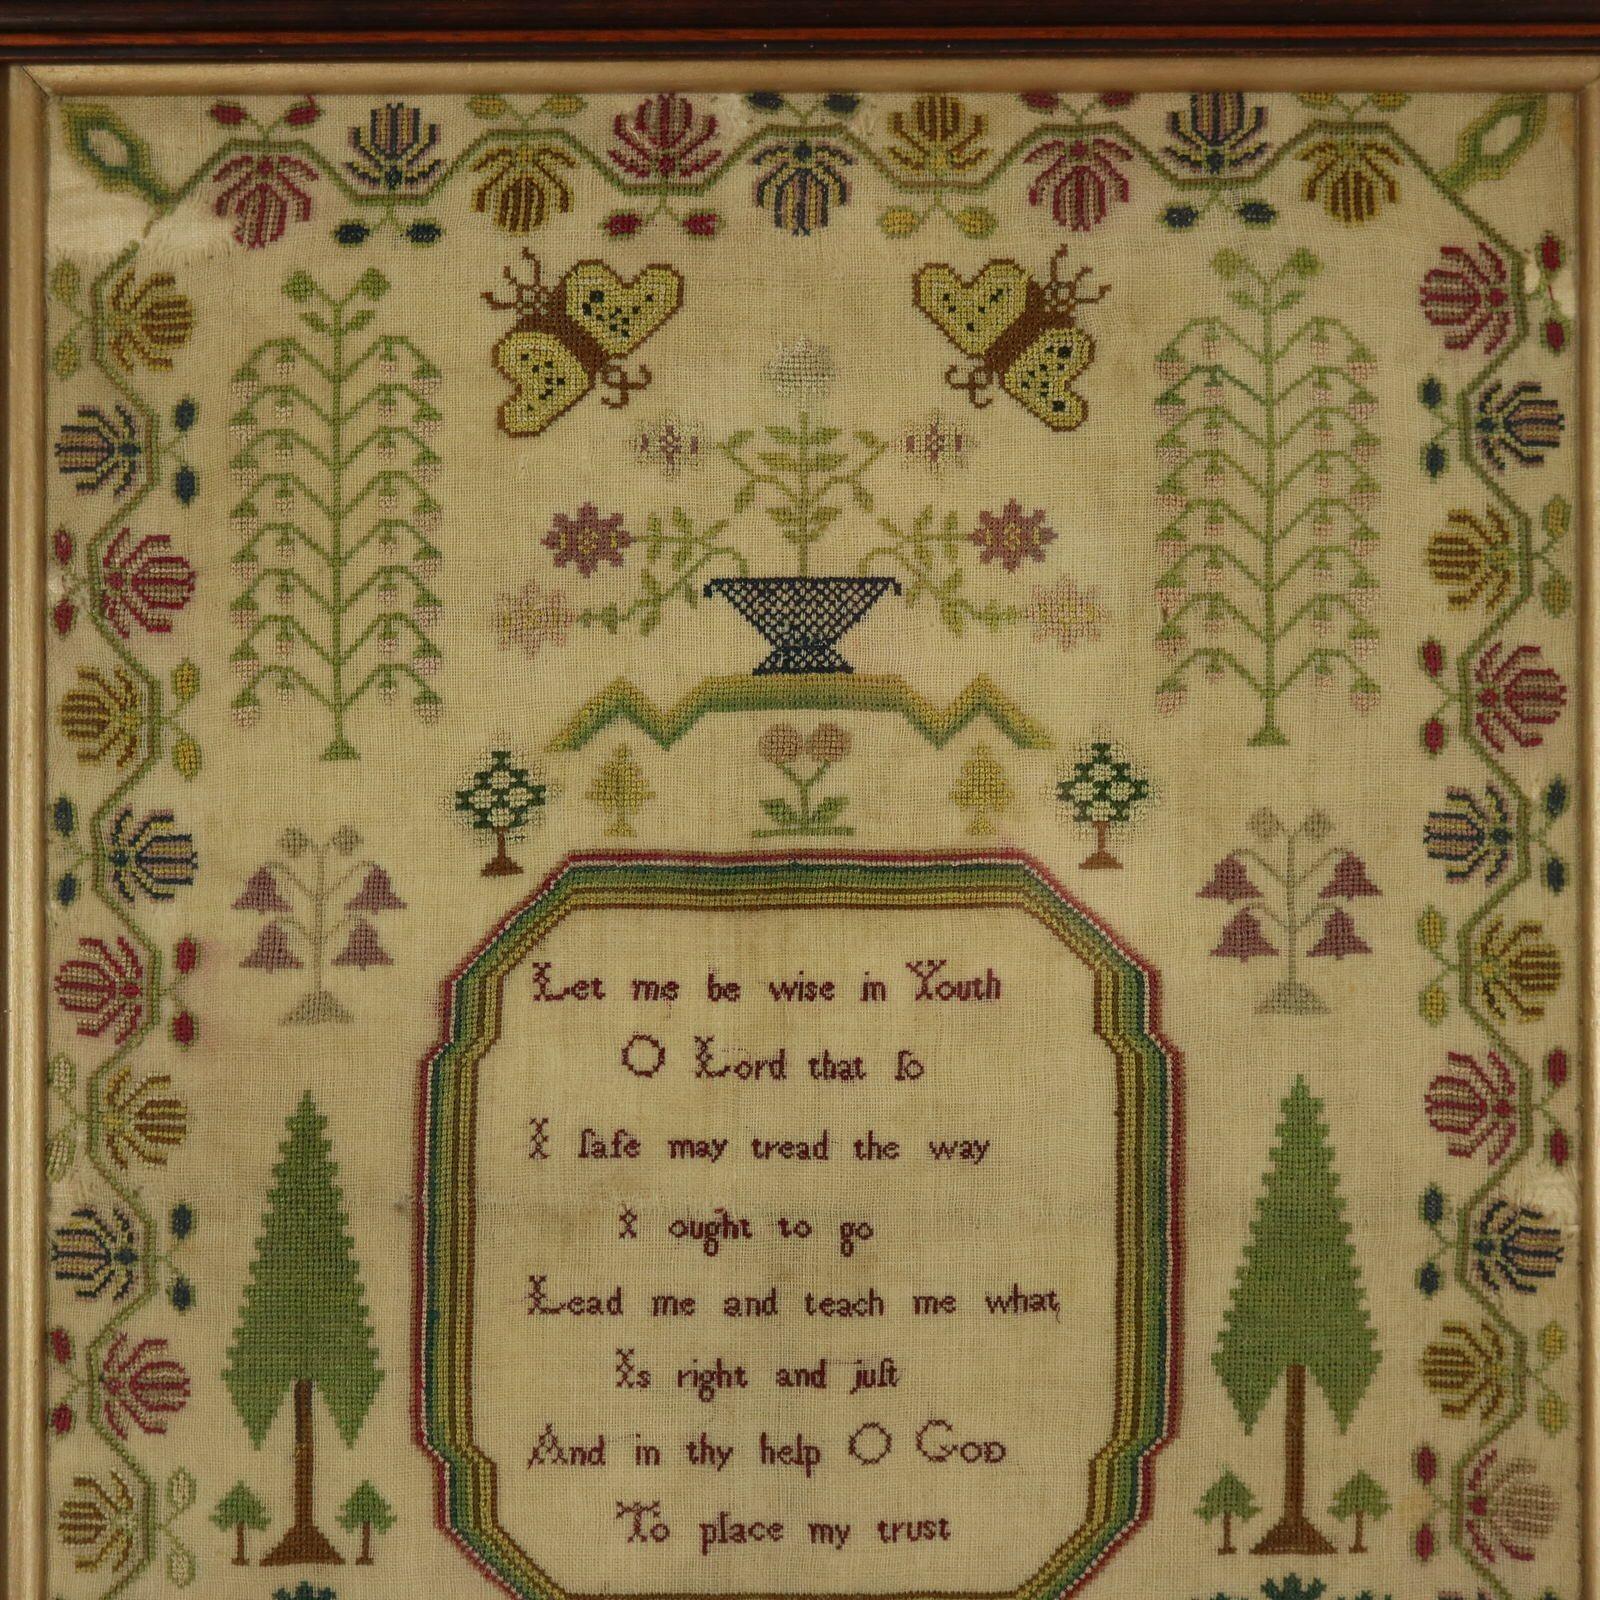 Sampler Regency, 1824, par Eliza Brewster. L'échantillonneur est travaillé en soie sur un fond de lin, principalement au point de croix. Bordure florale sinueuse. Couleurs : vert, rouge, brun, or, argent, bleu et rose. Le verset dit : 